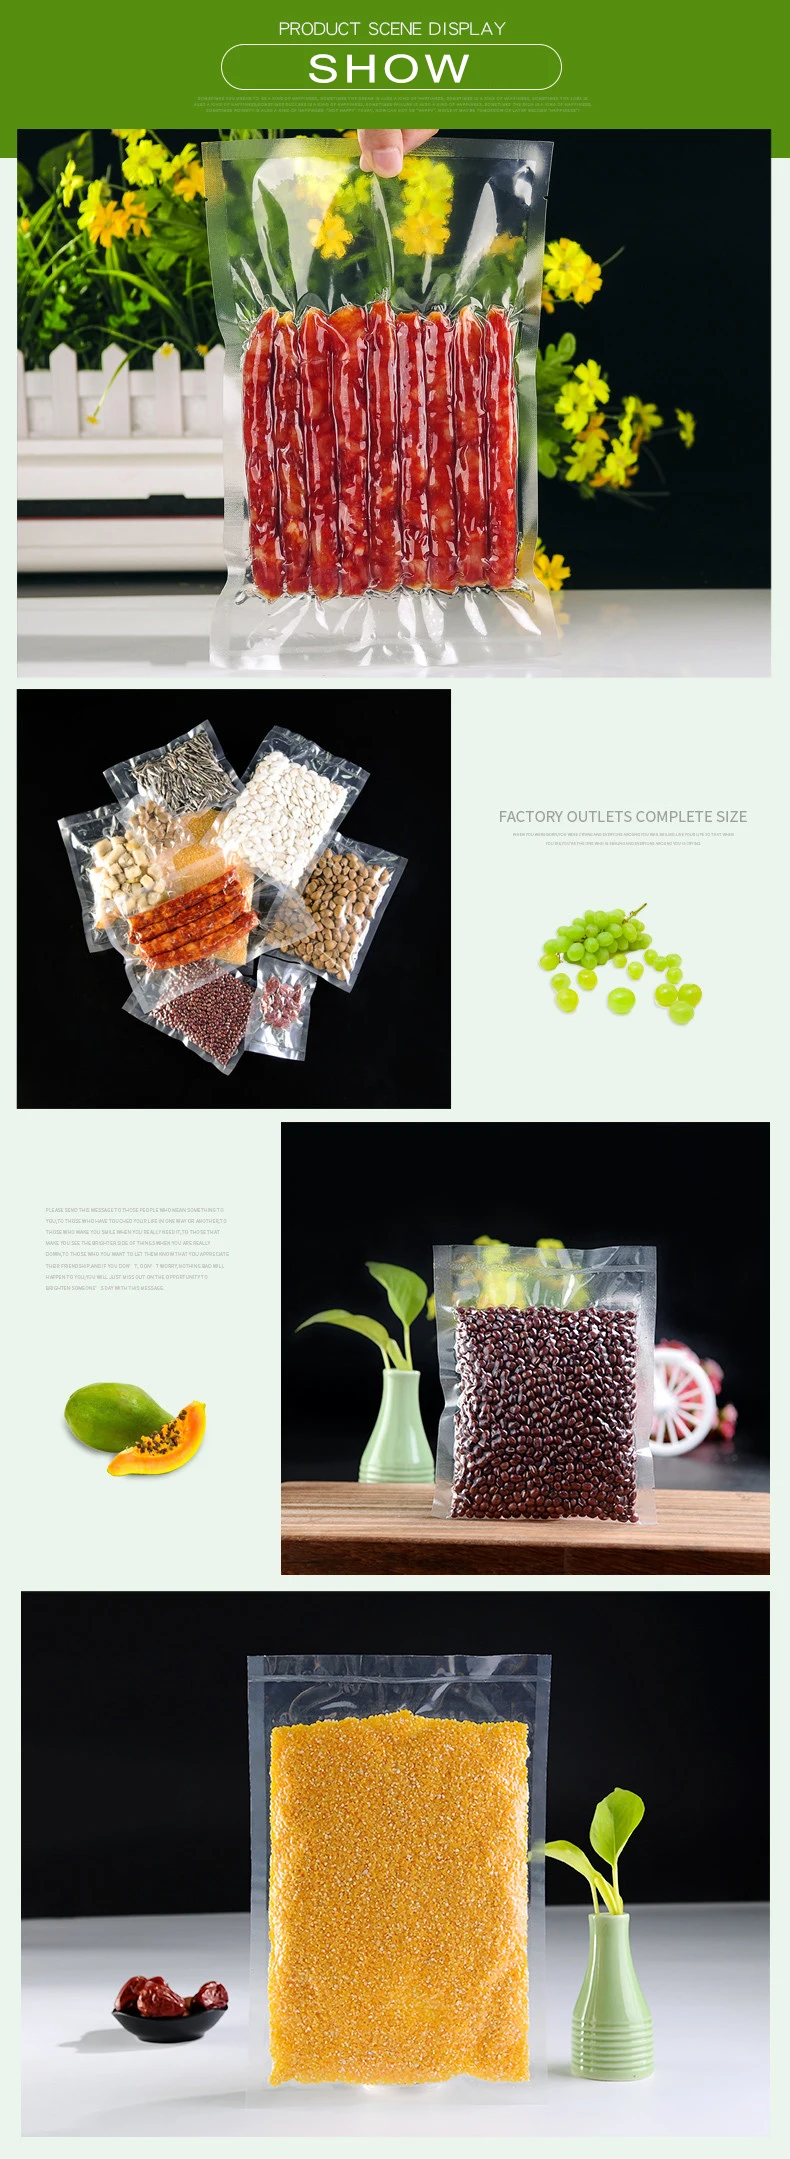 0,24 мм 50-90 см вакуумная нейлоновая прозрачная упаковочная сумка для приготовления пищи герметичная пластиковая посылка для хранения мясных закусок чая